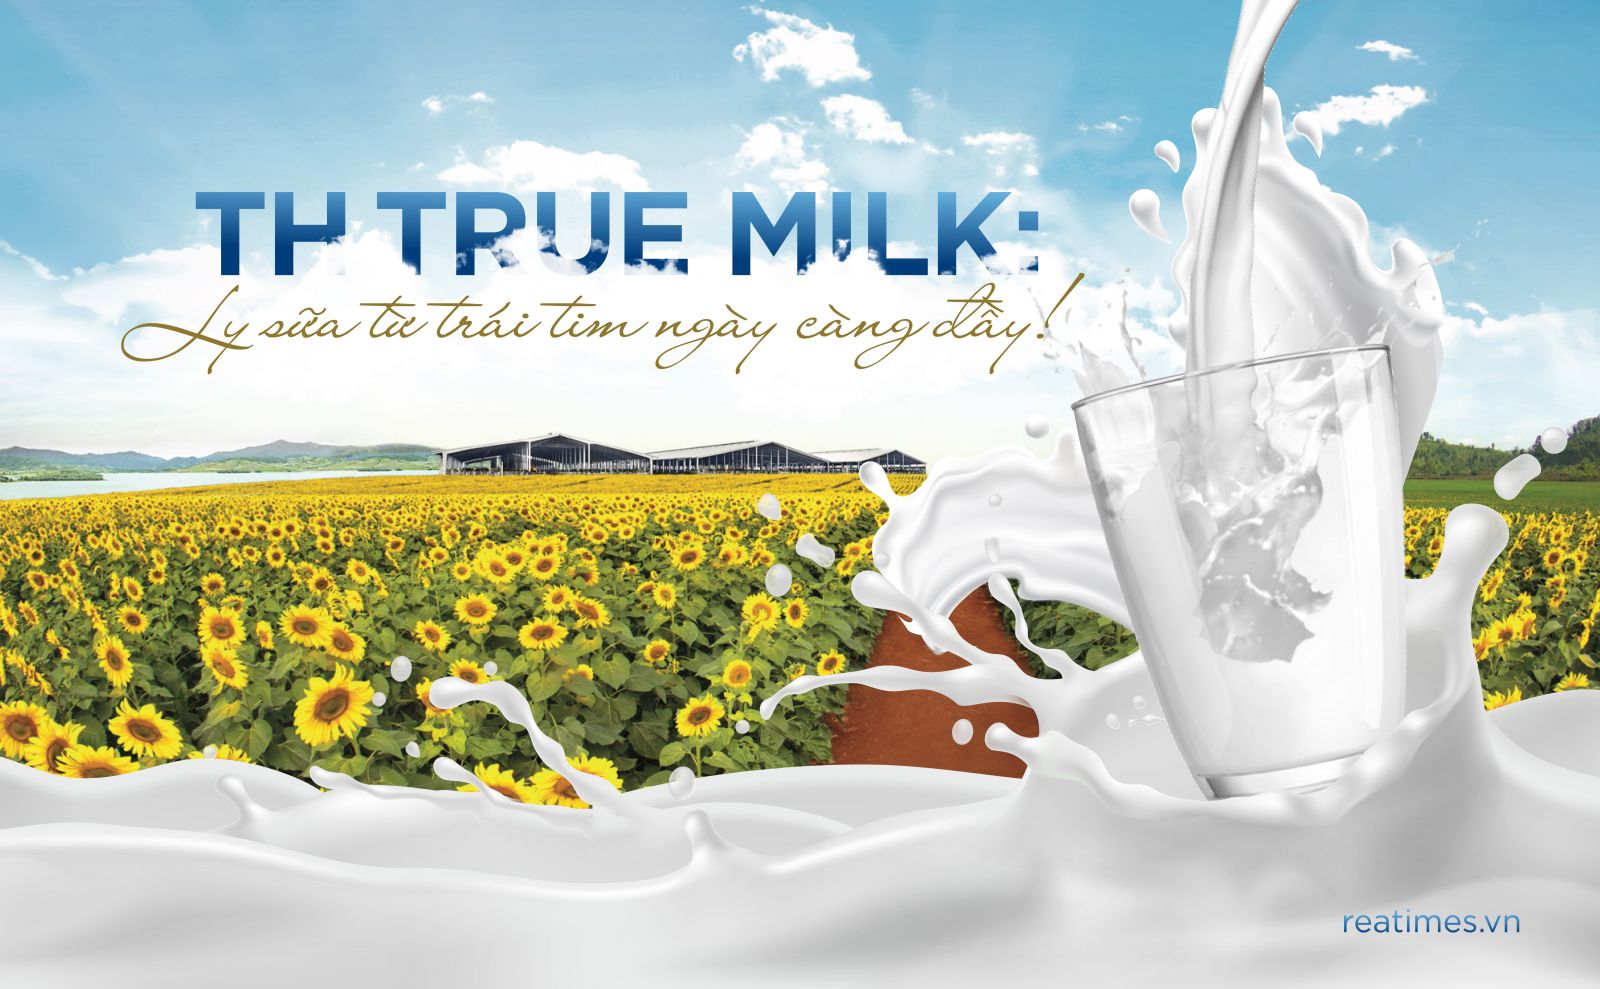 TH True MILK: Ly sữa từ trái tim ngày càng đầy!